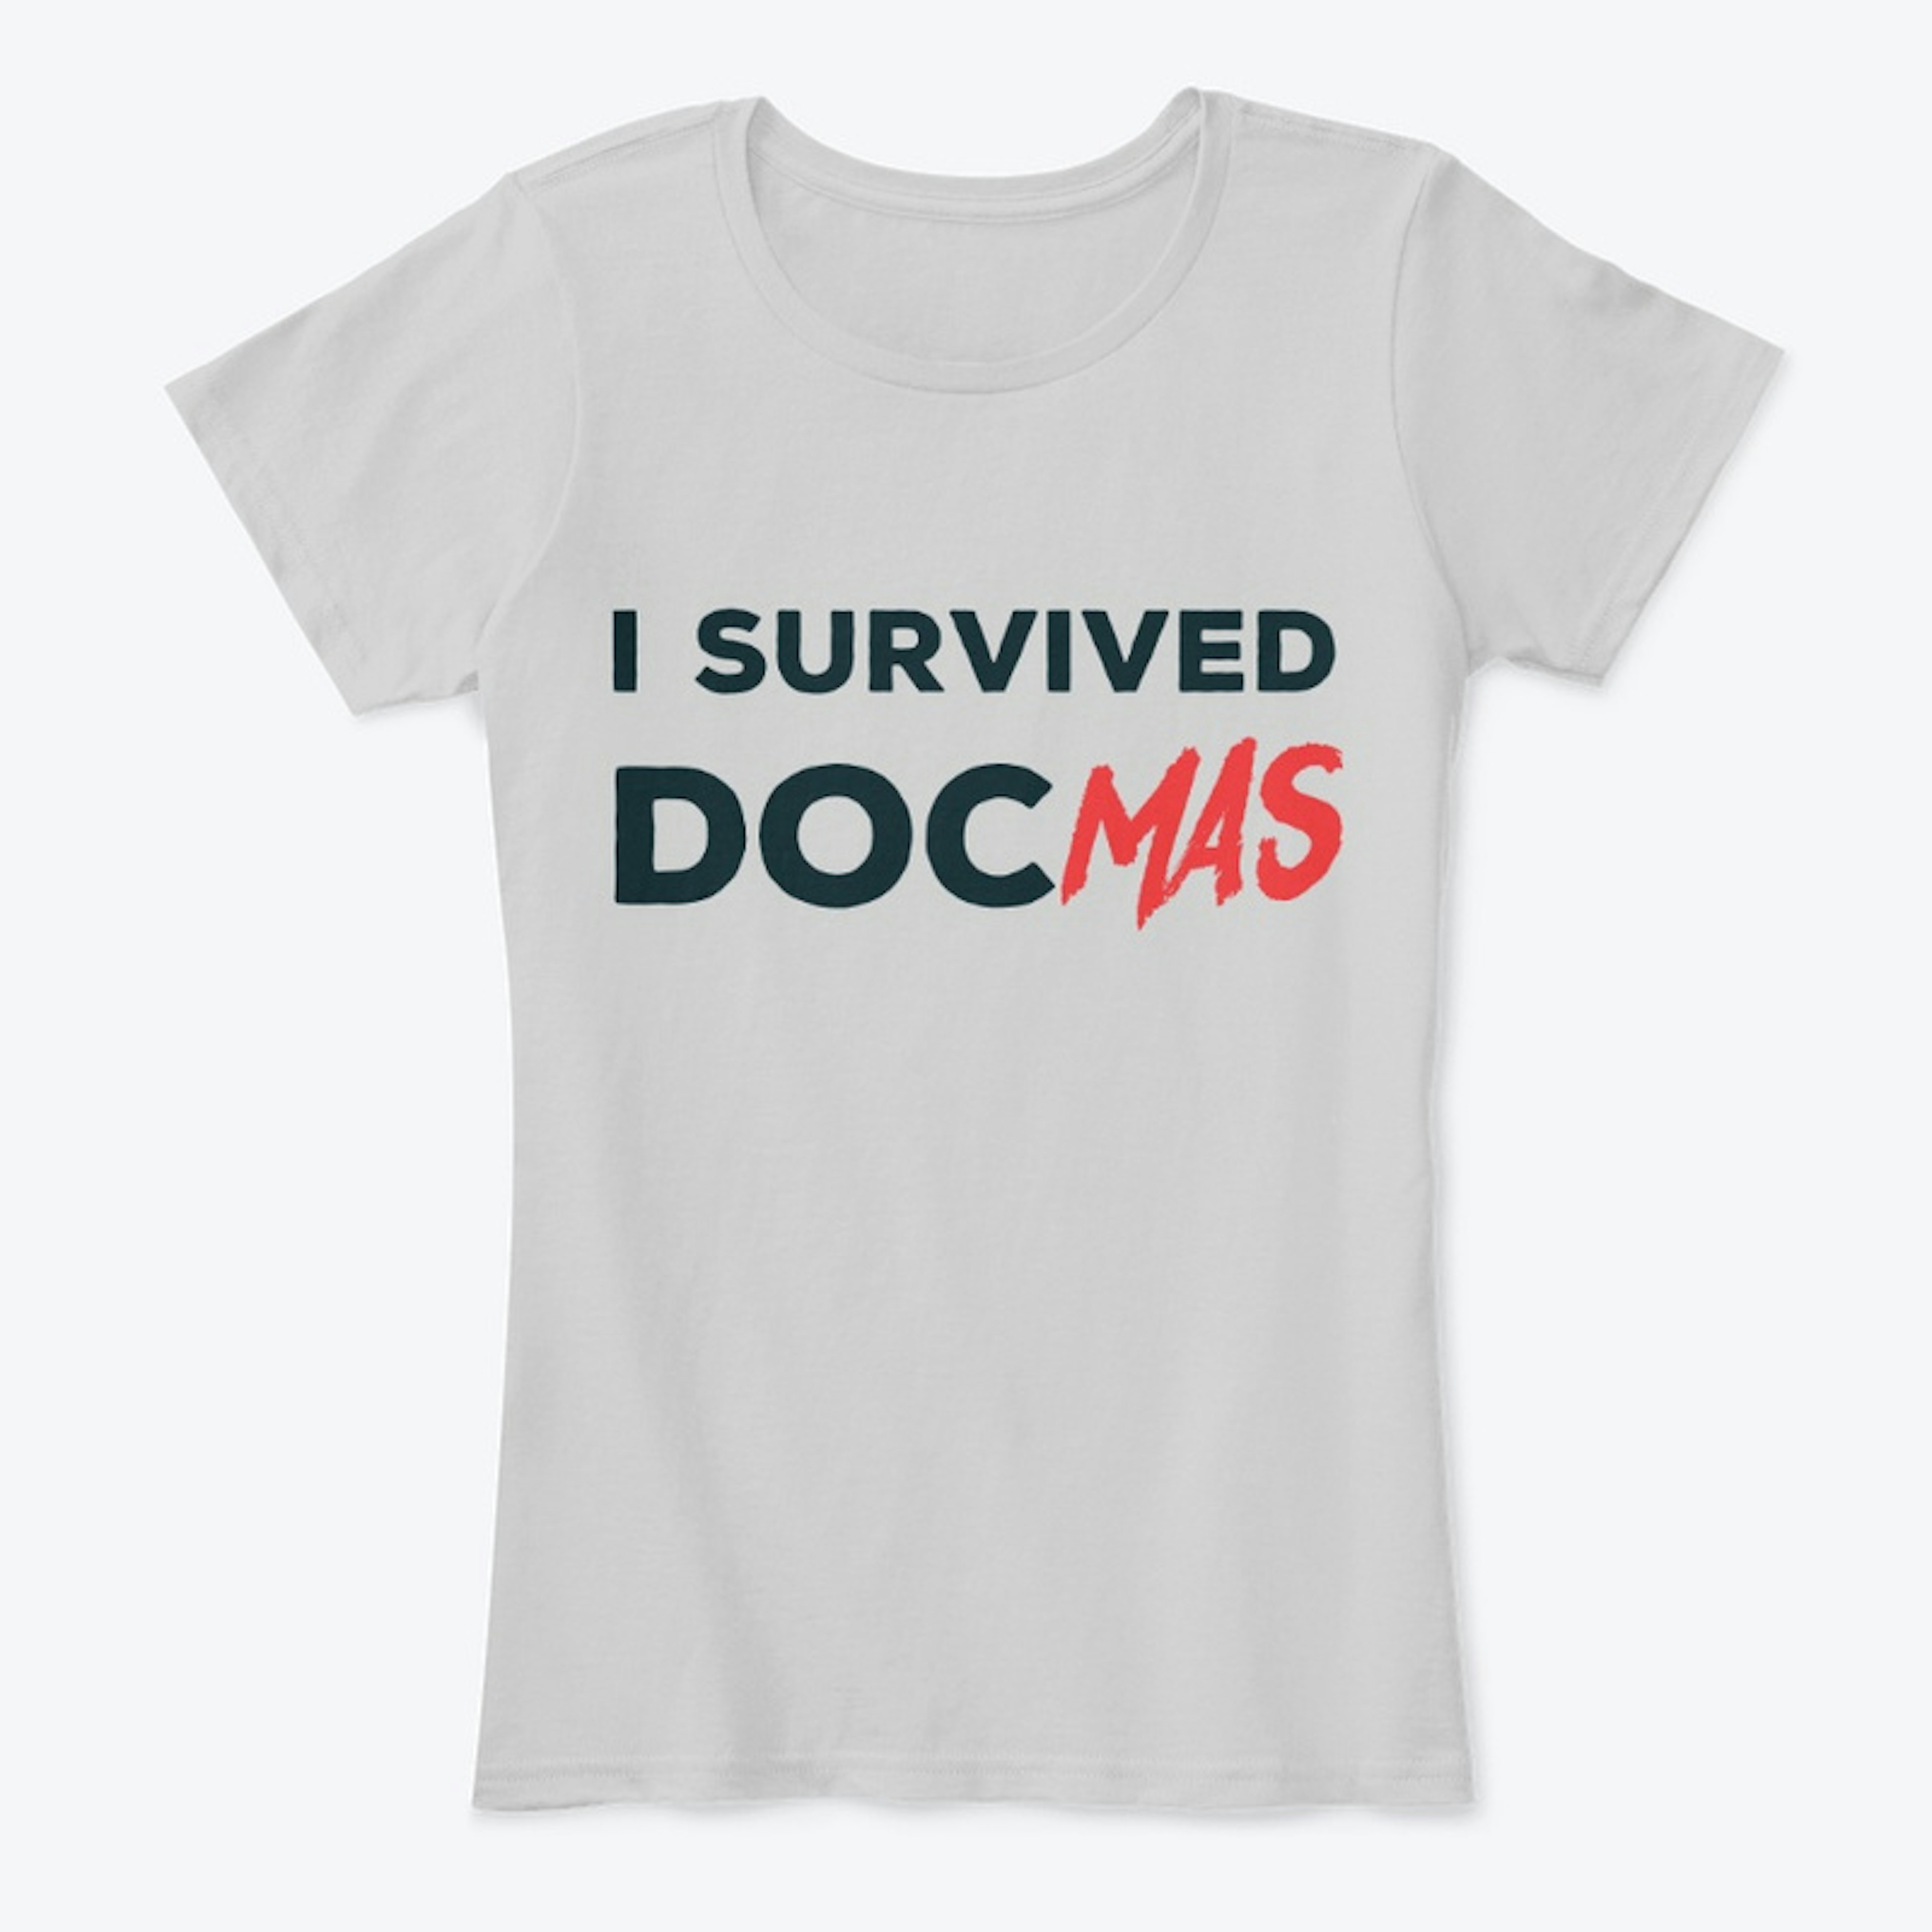 I Survived DocMas